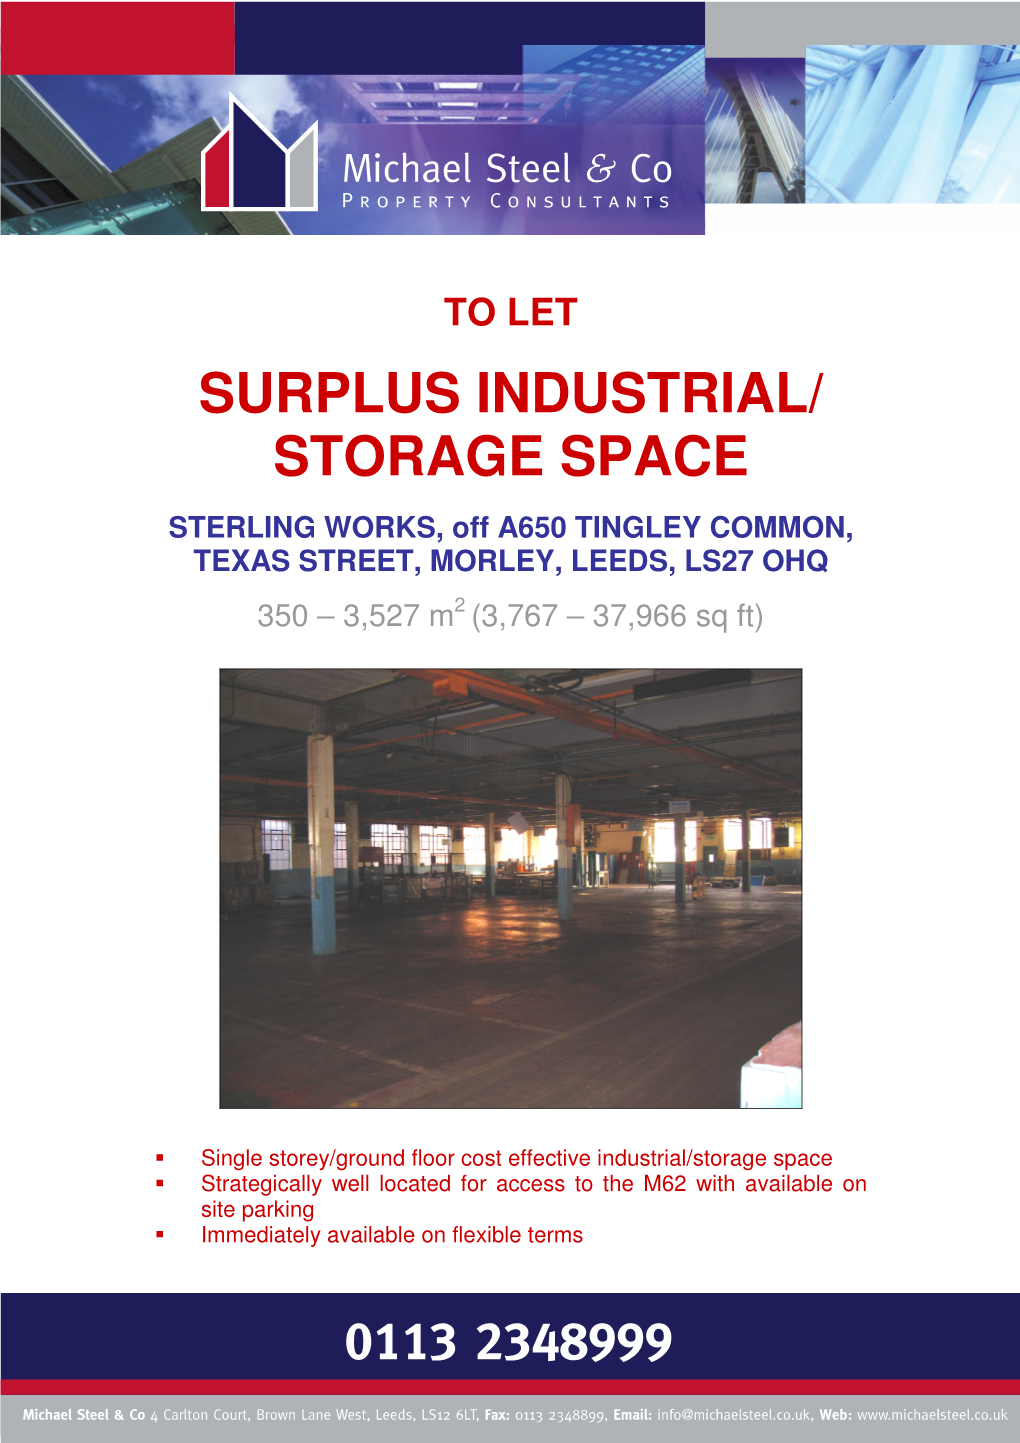 Surplus Industrial/ Storage Space